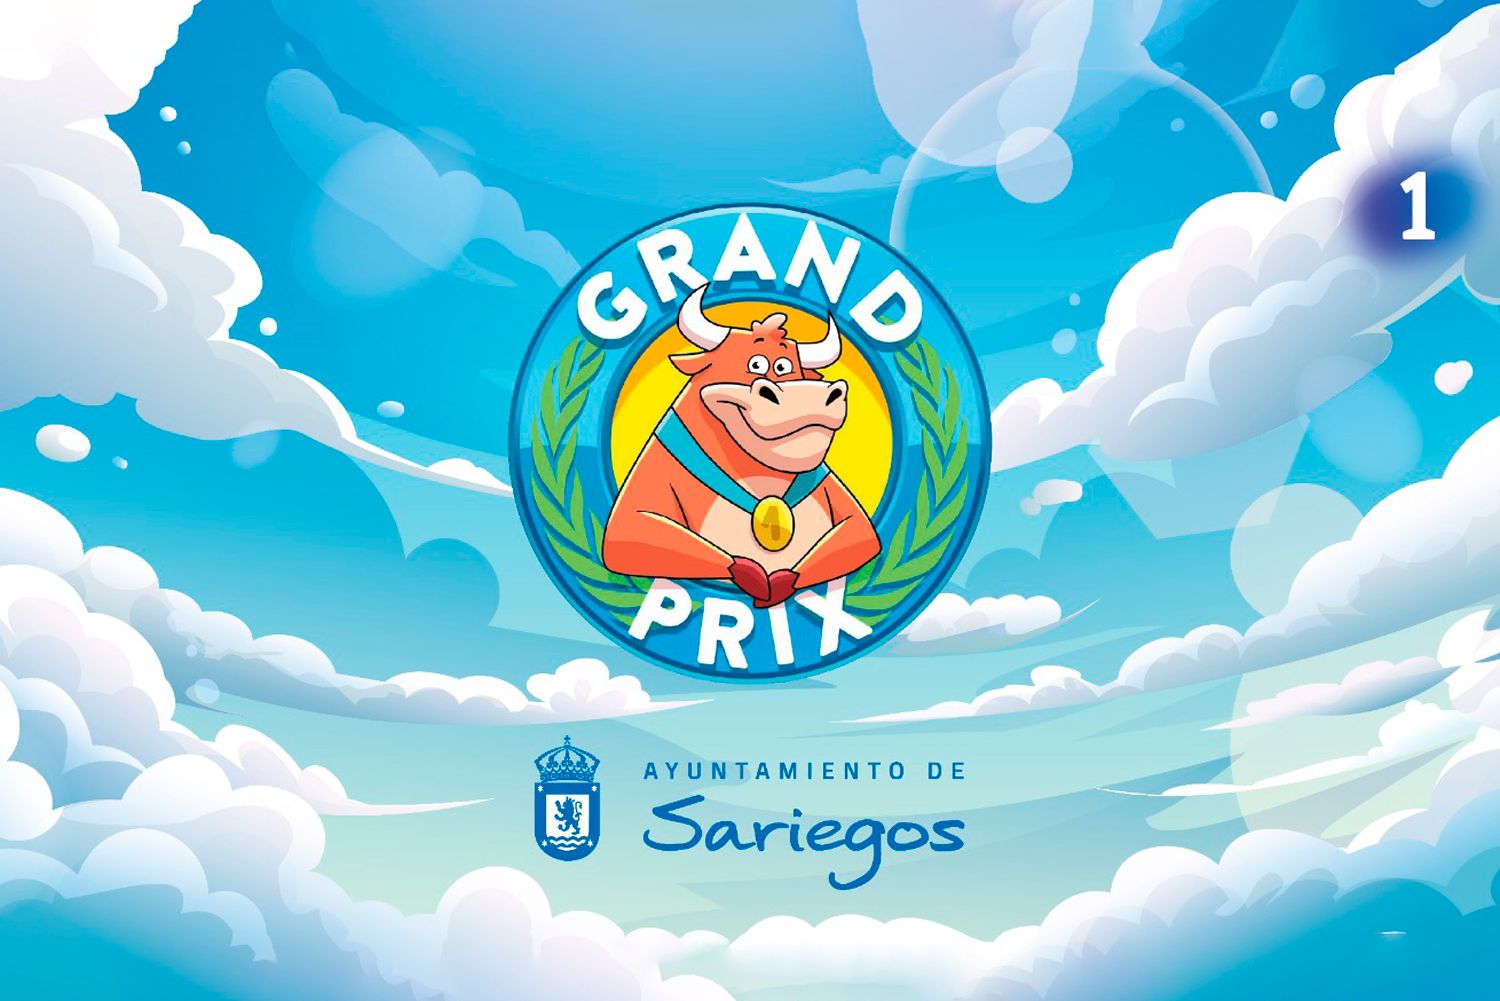 Así participó Sariegos en la grabación del vídeo promocional para lograr una plaza en el Grand Prix